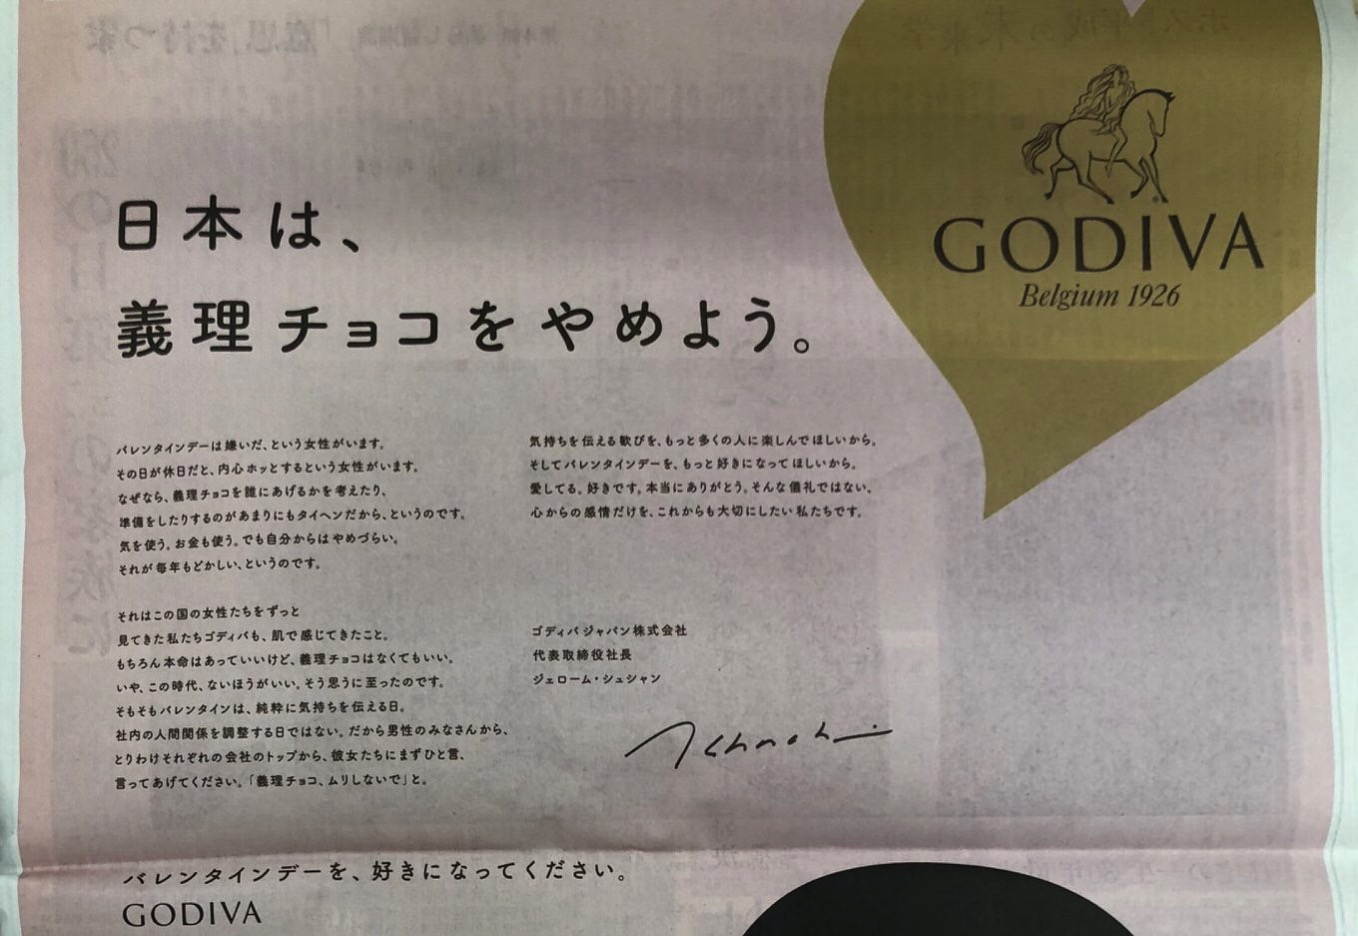 ゴディバ「日本は、義理チョコをやめよう」→ブラックサンダーが反論「義理チョコ文化を応援いたします」